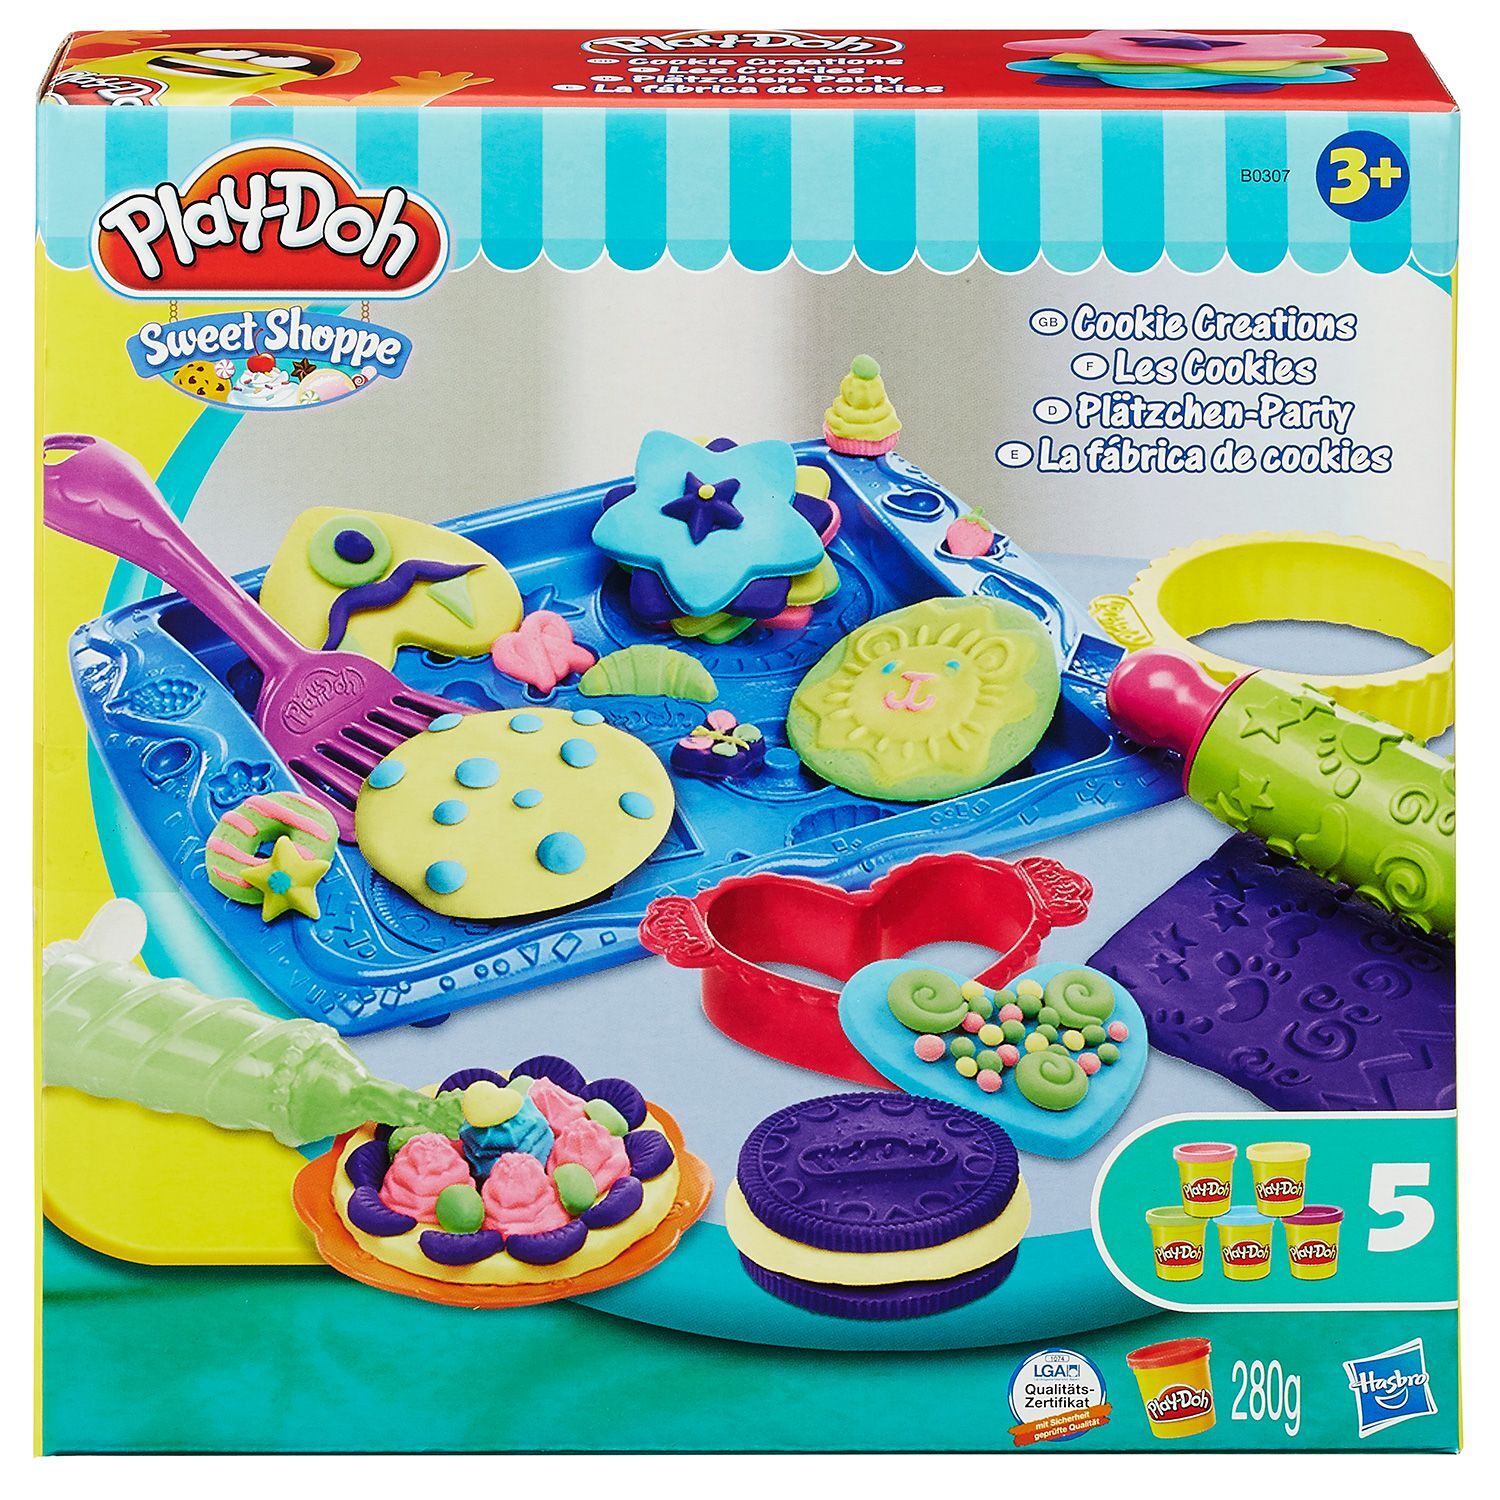 Πίσω στα θρανία και ώρα για δημιουργία | Κερδίστε 3 υπέροχα σετ παιχνιδιού Play-Doh